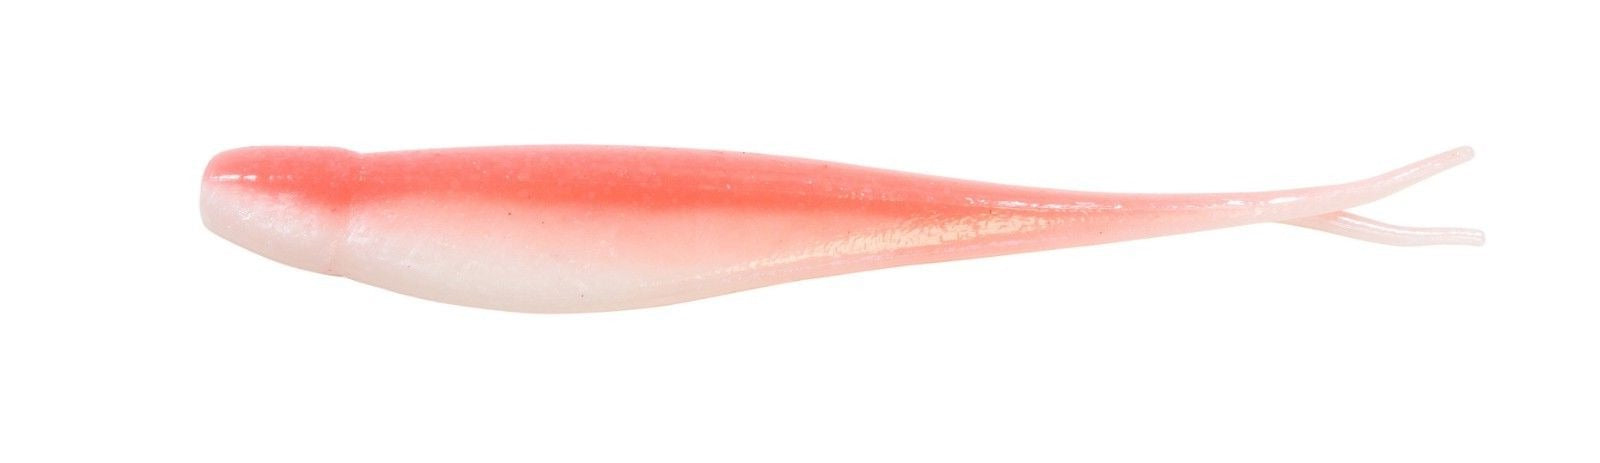 10x Snapper Soft Plastics 5 Fishing Lures Jerk Shad Minnow Gulp King Stick  Bait